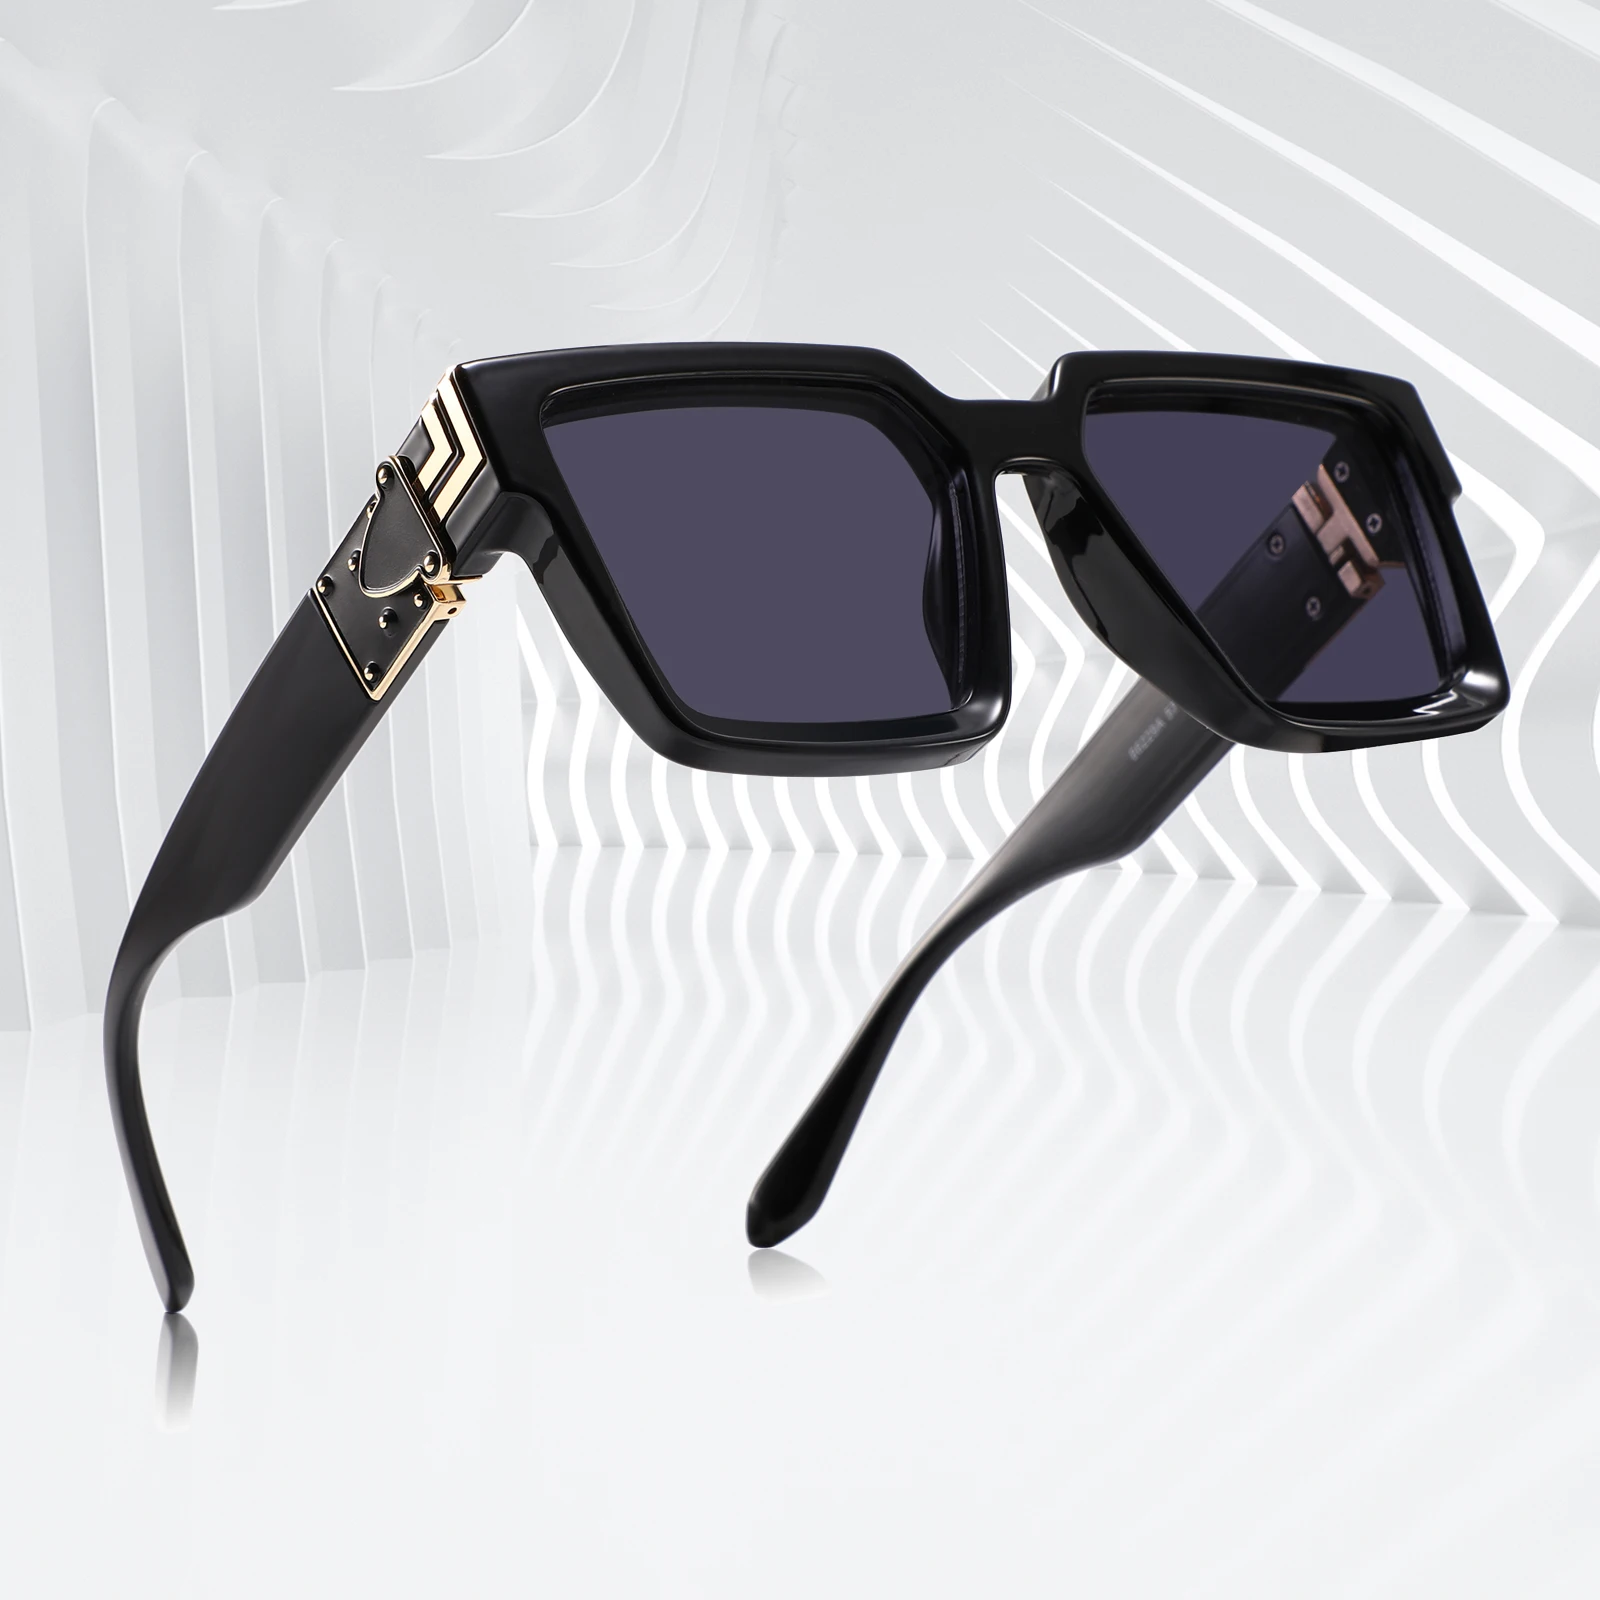 Unboxing gafas Louis Vuitton 1.1 MILLIONAIRES (replica) 